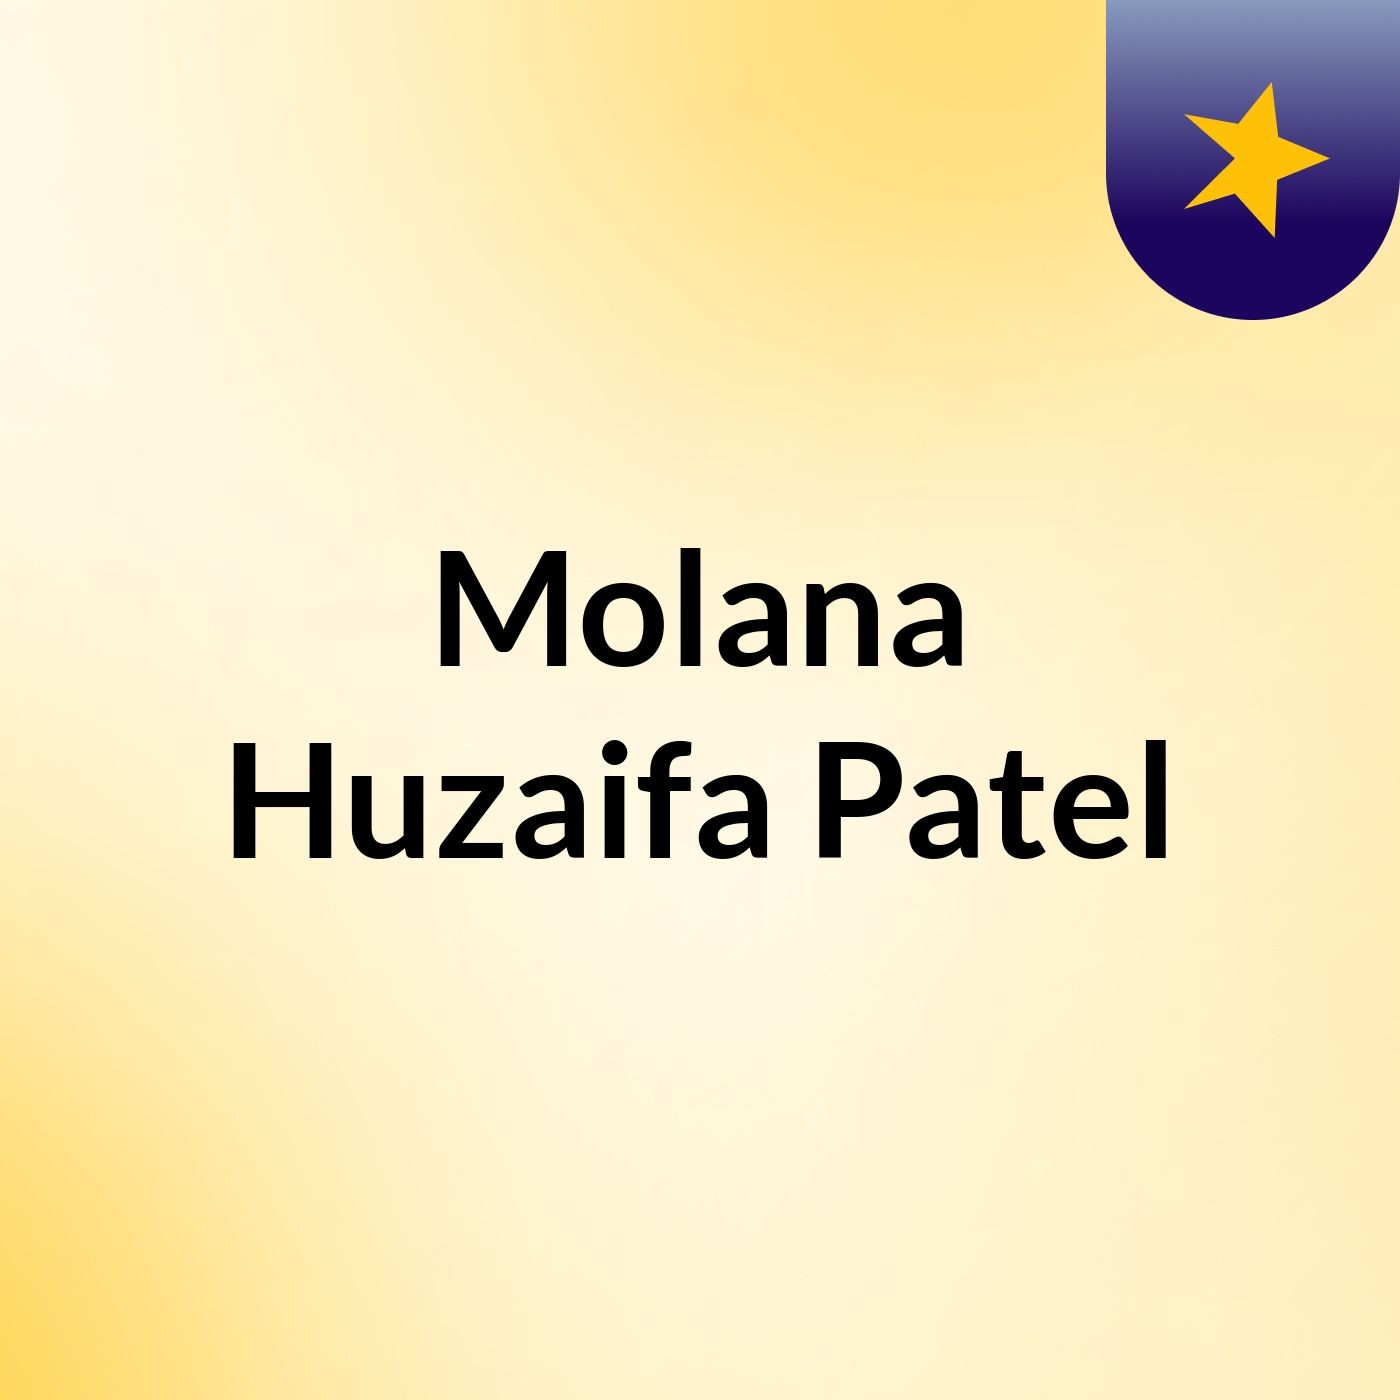 Episode 15 - Molana Huzaifa Patel